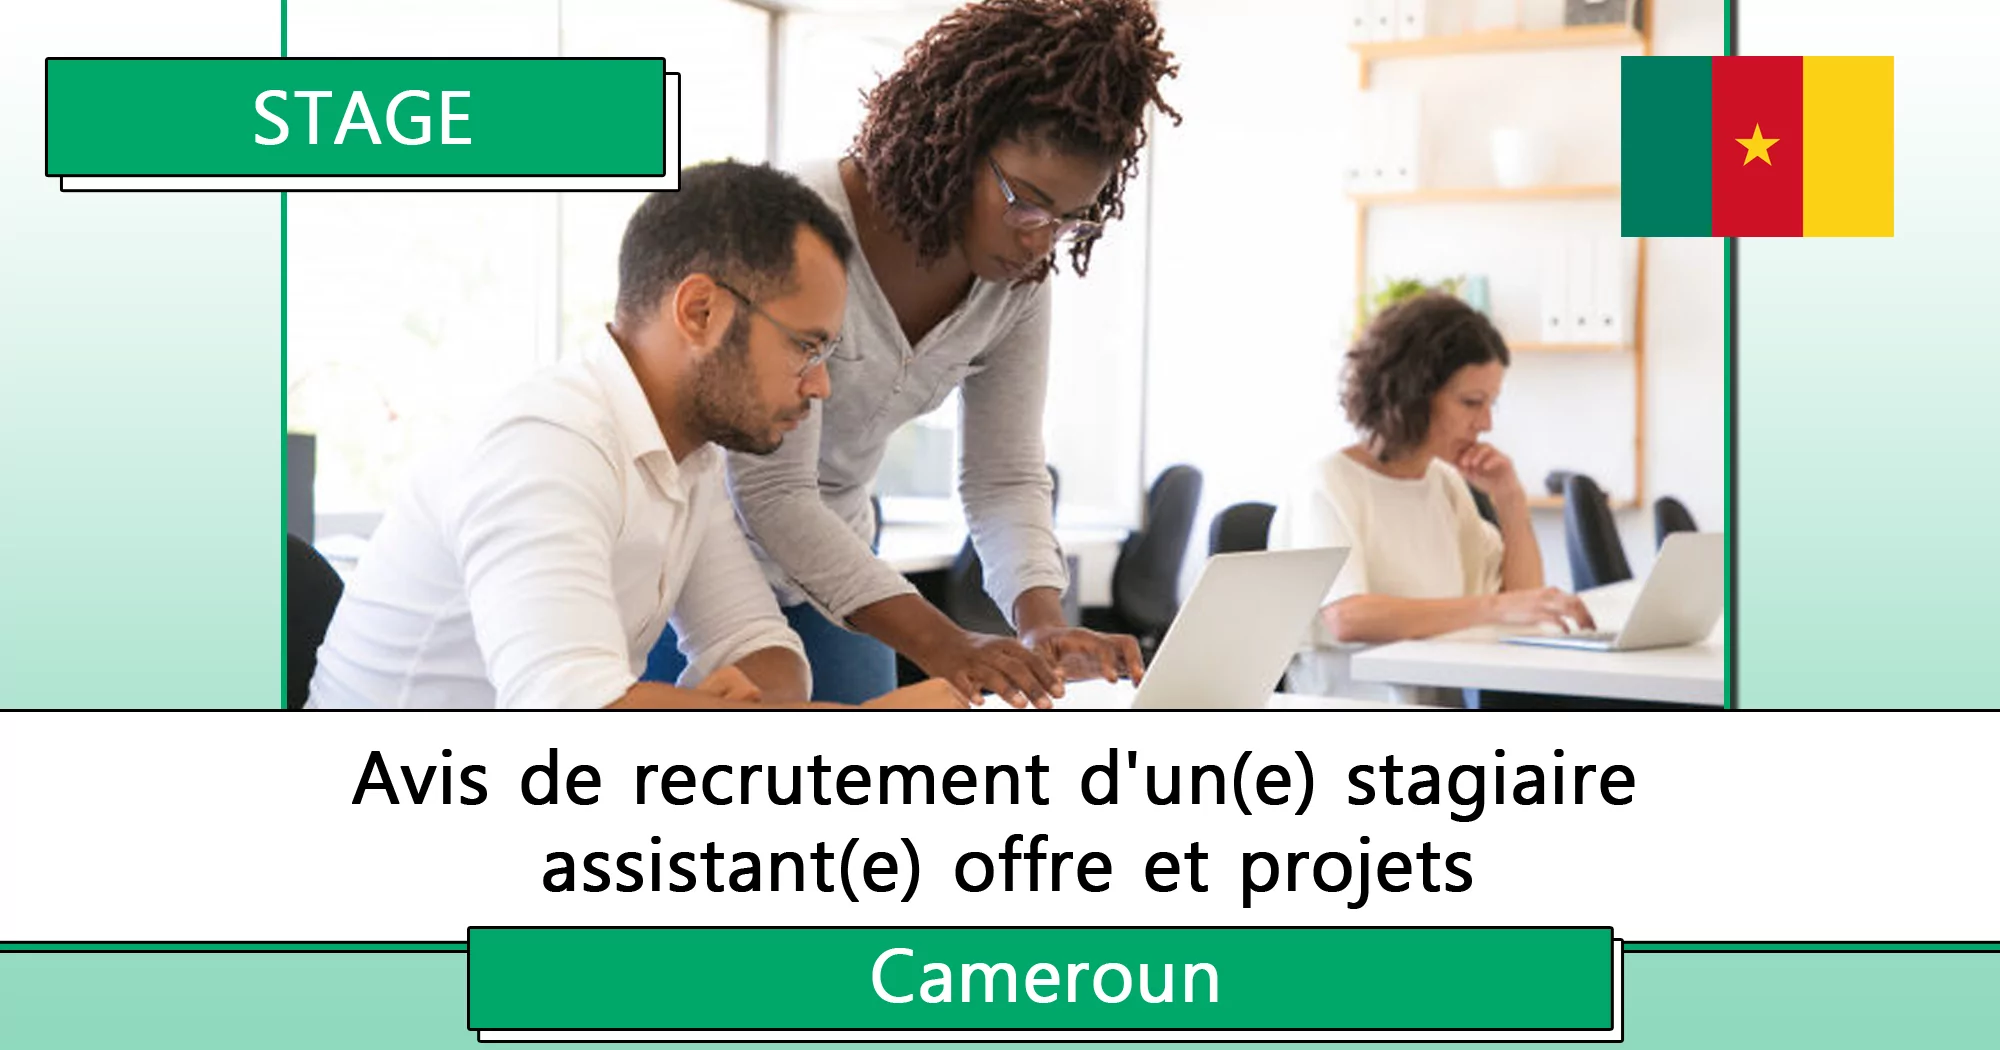 Avis de recrutement d’un(e) stagiaire assistant(e) offre et projets, Cameroun